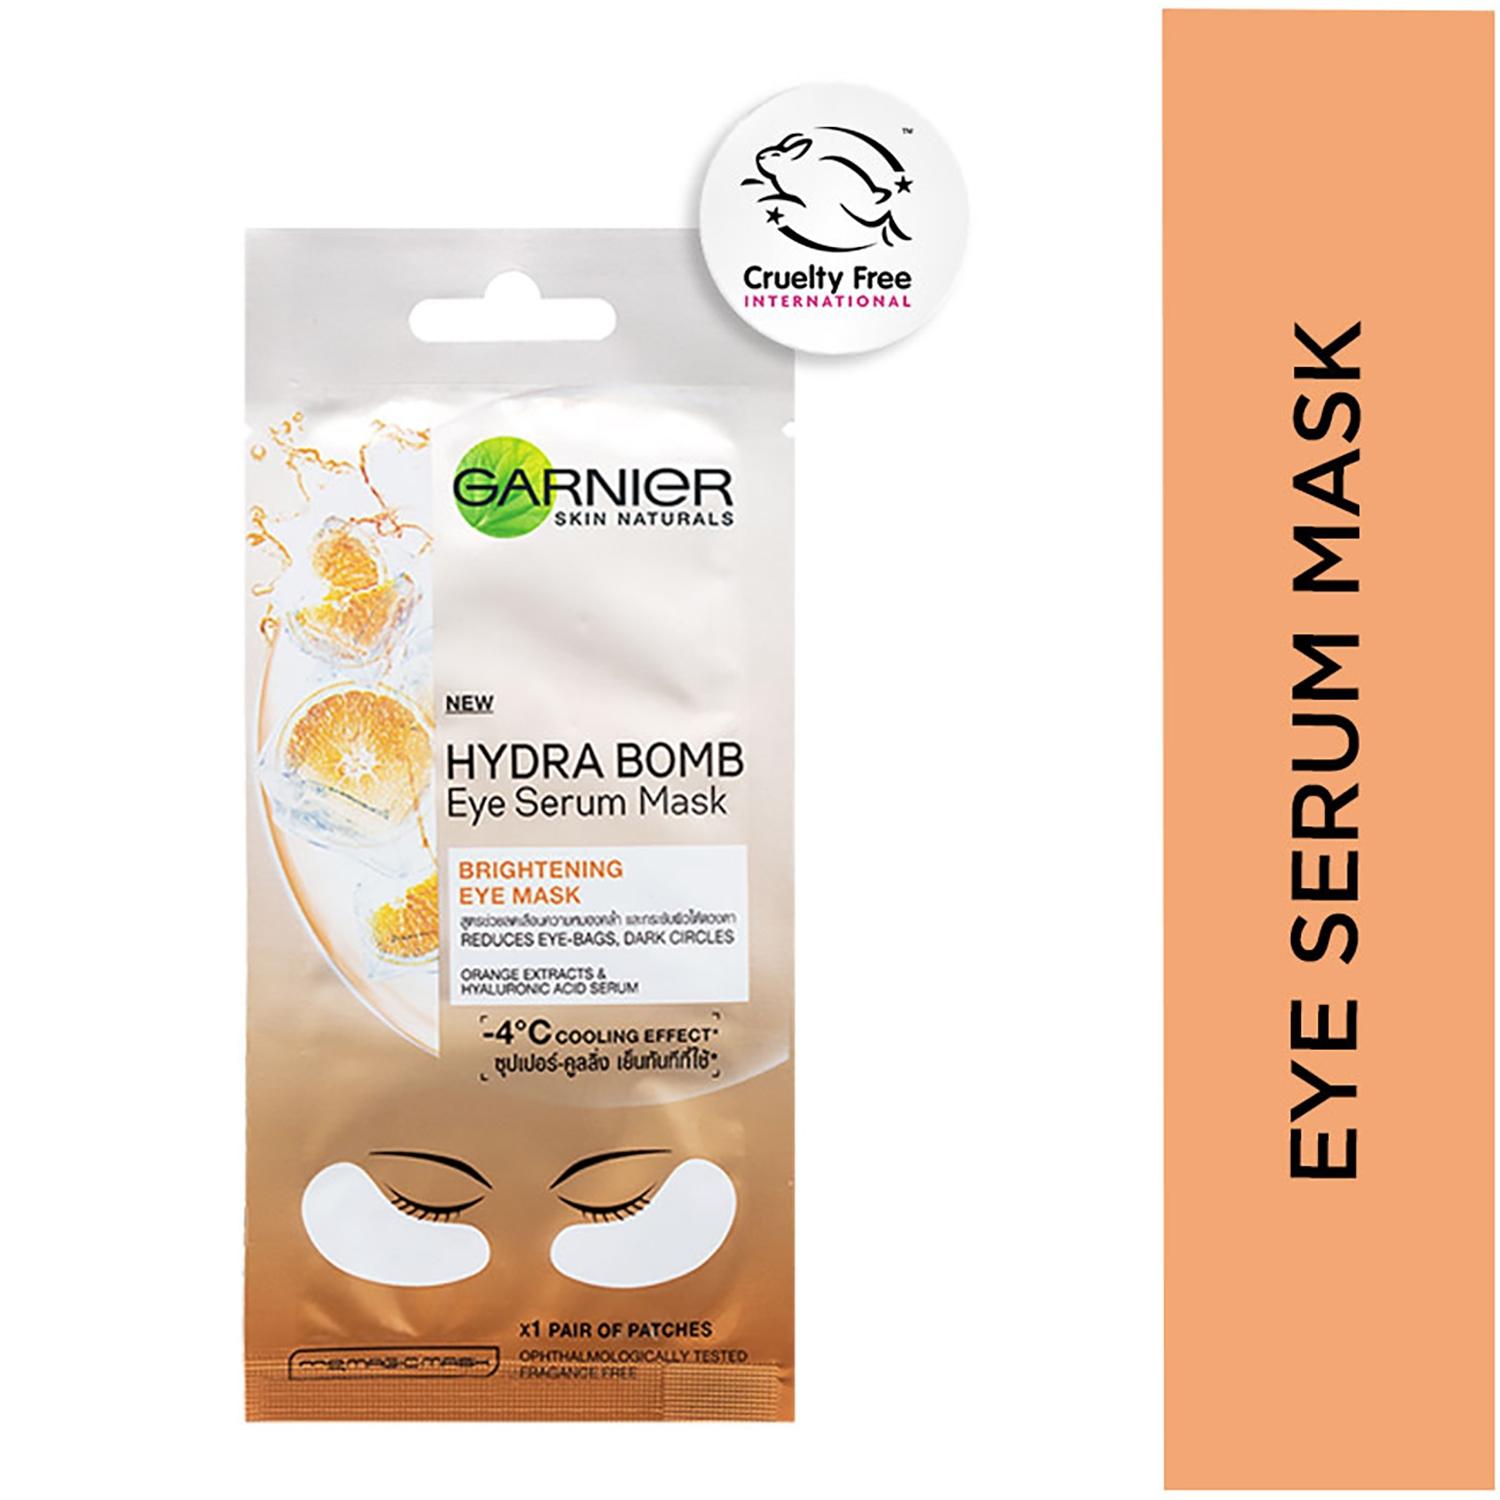 garnier hydra bomb eye serum mask orange (6g)